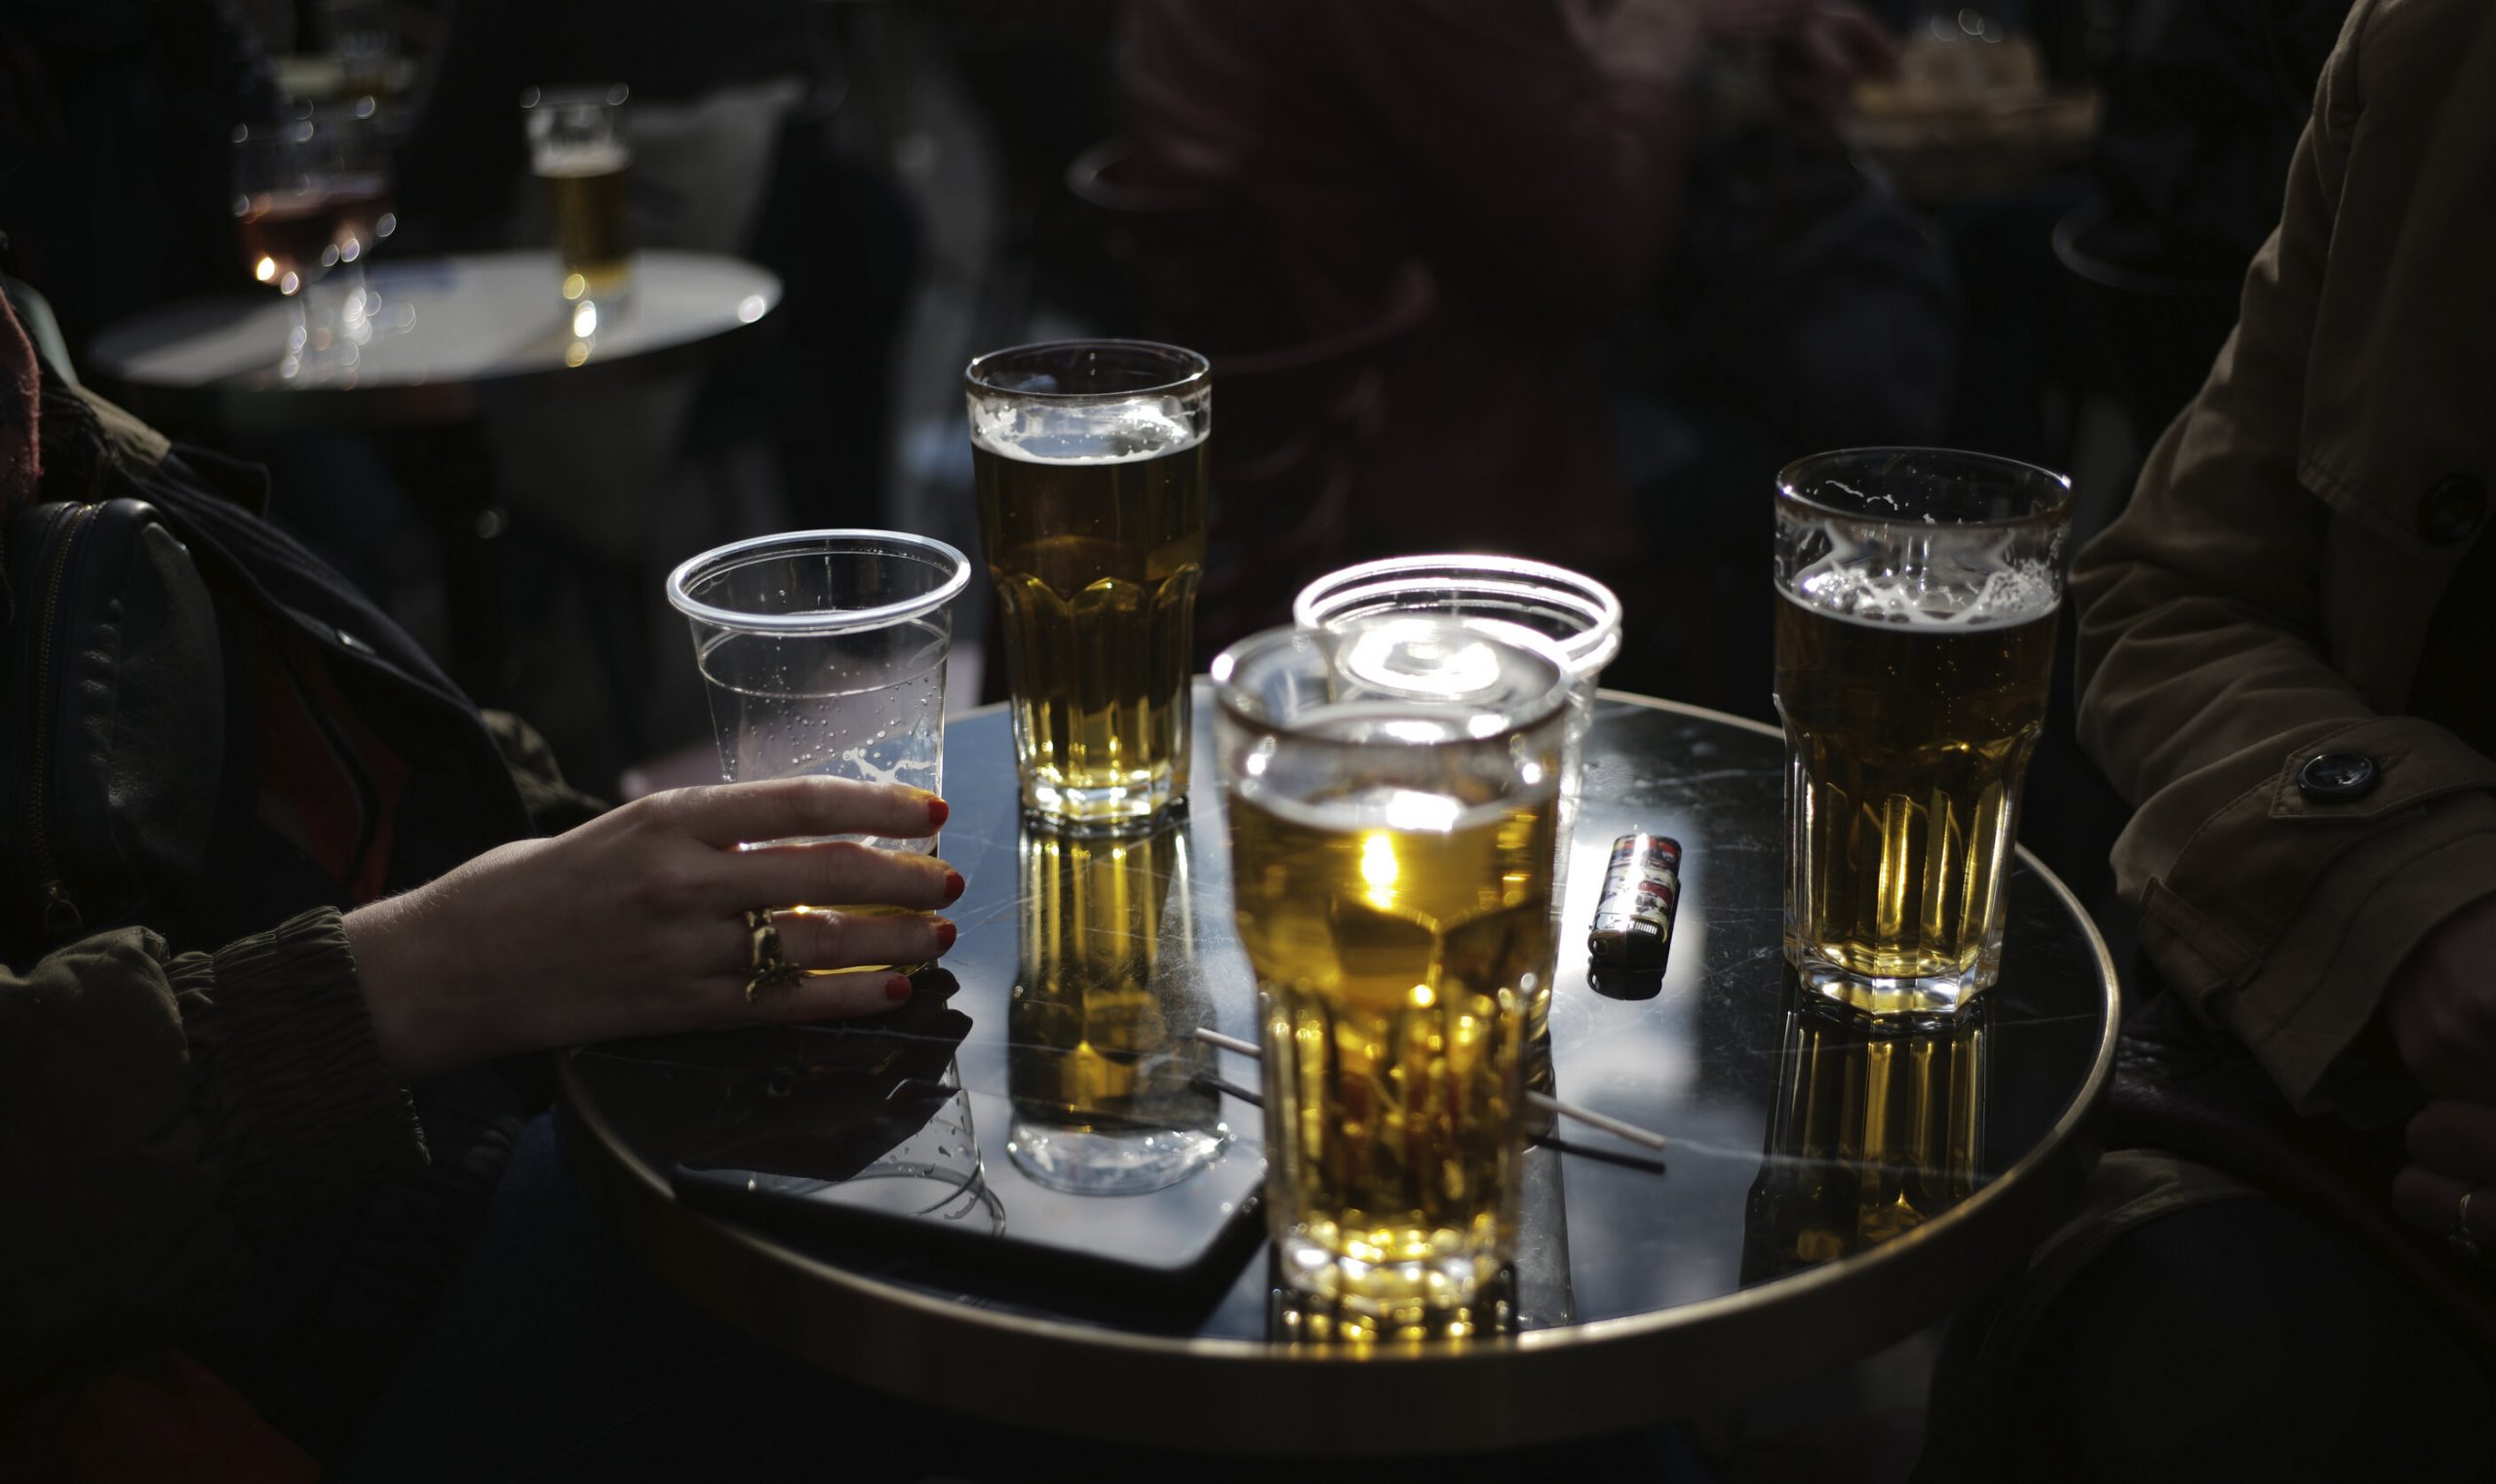 Norvegia știe cum să oprească varianta Omicron: Interzice consumul de alcool în baruri și restaurante